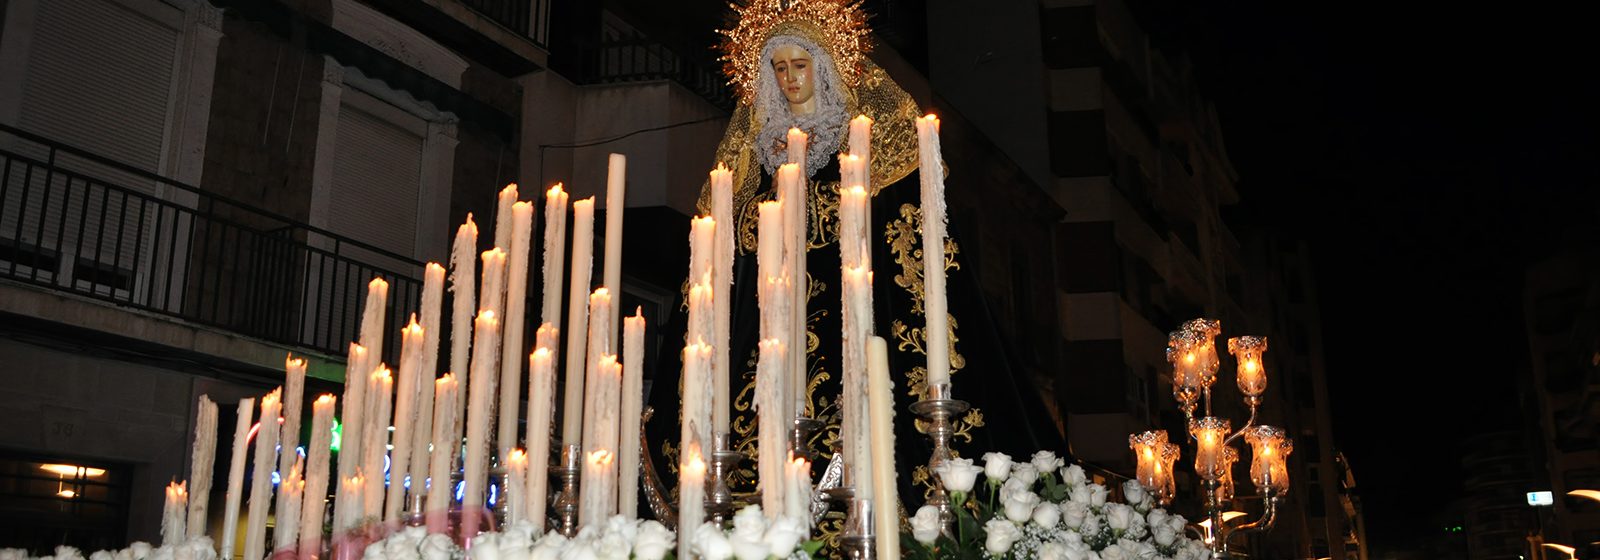 Foto del paso de la Virgen de la Soledad